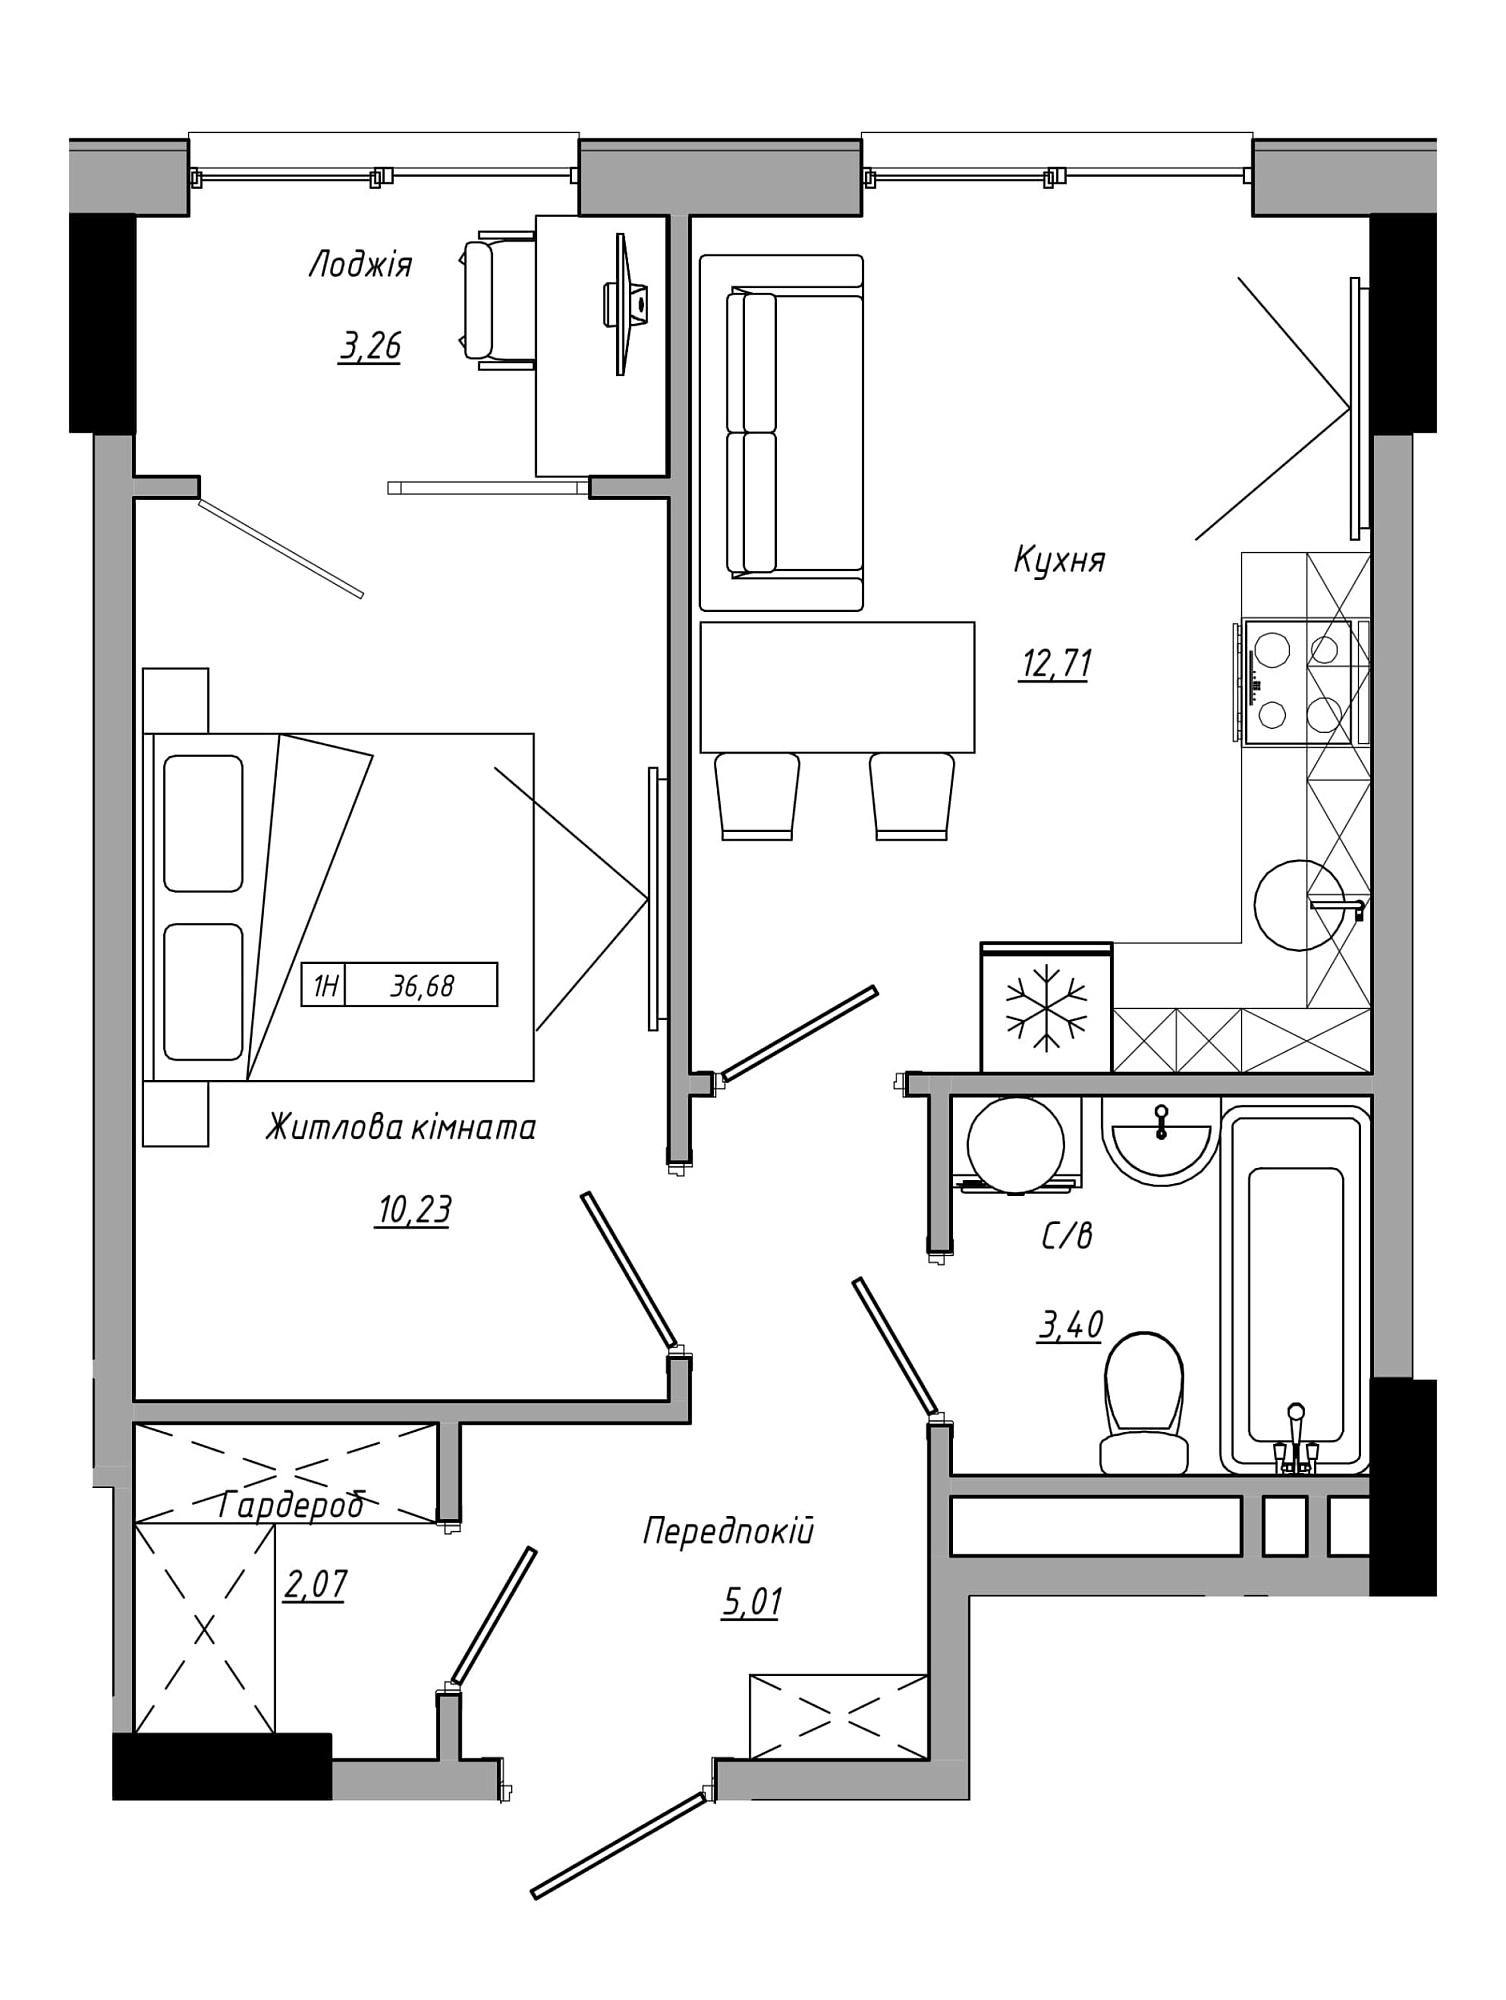 Планировка 1-к квартира площей 36.68м2, AB-21-06/00016.